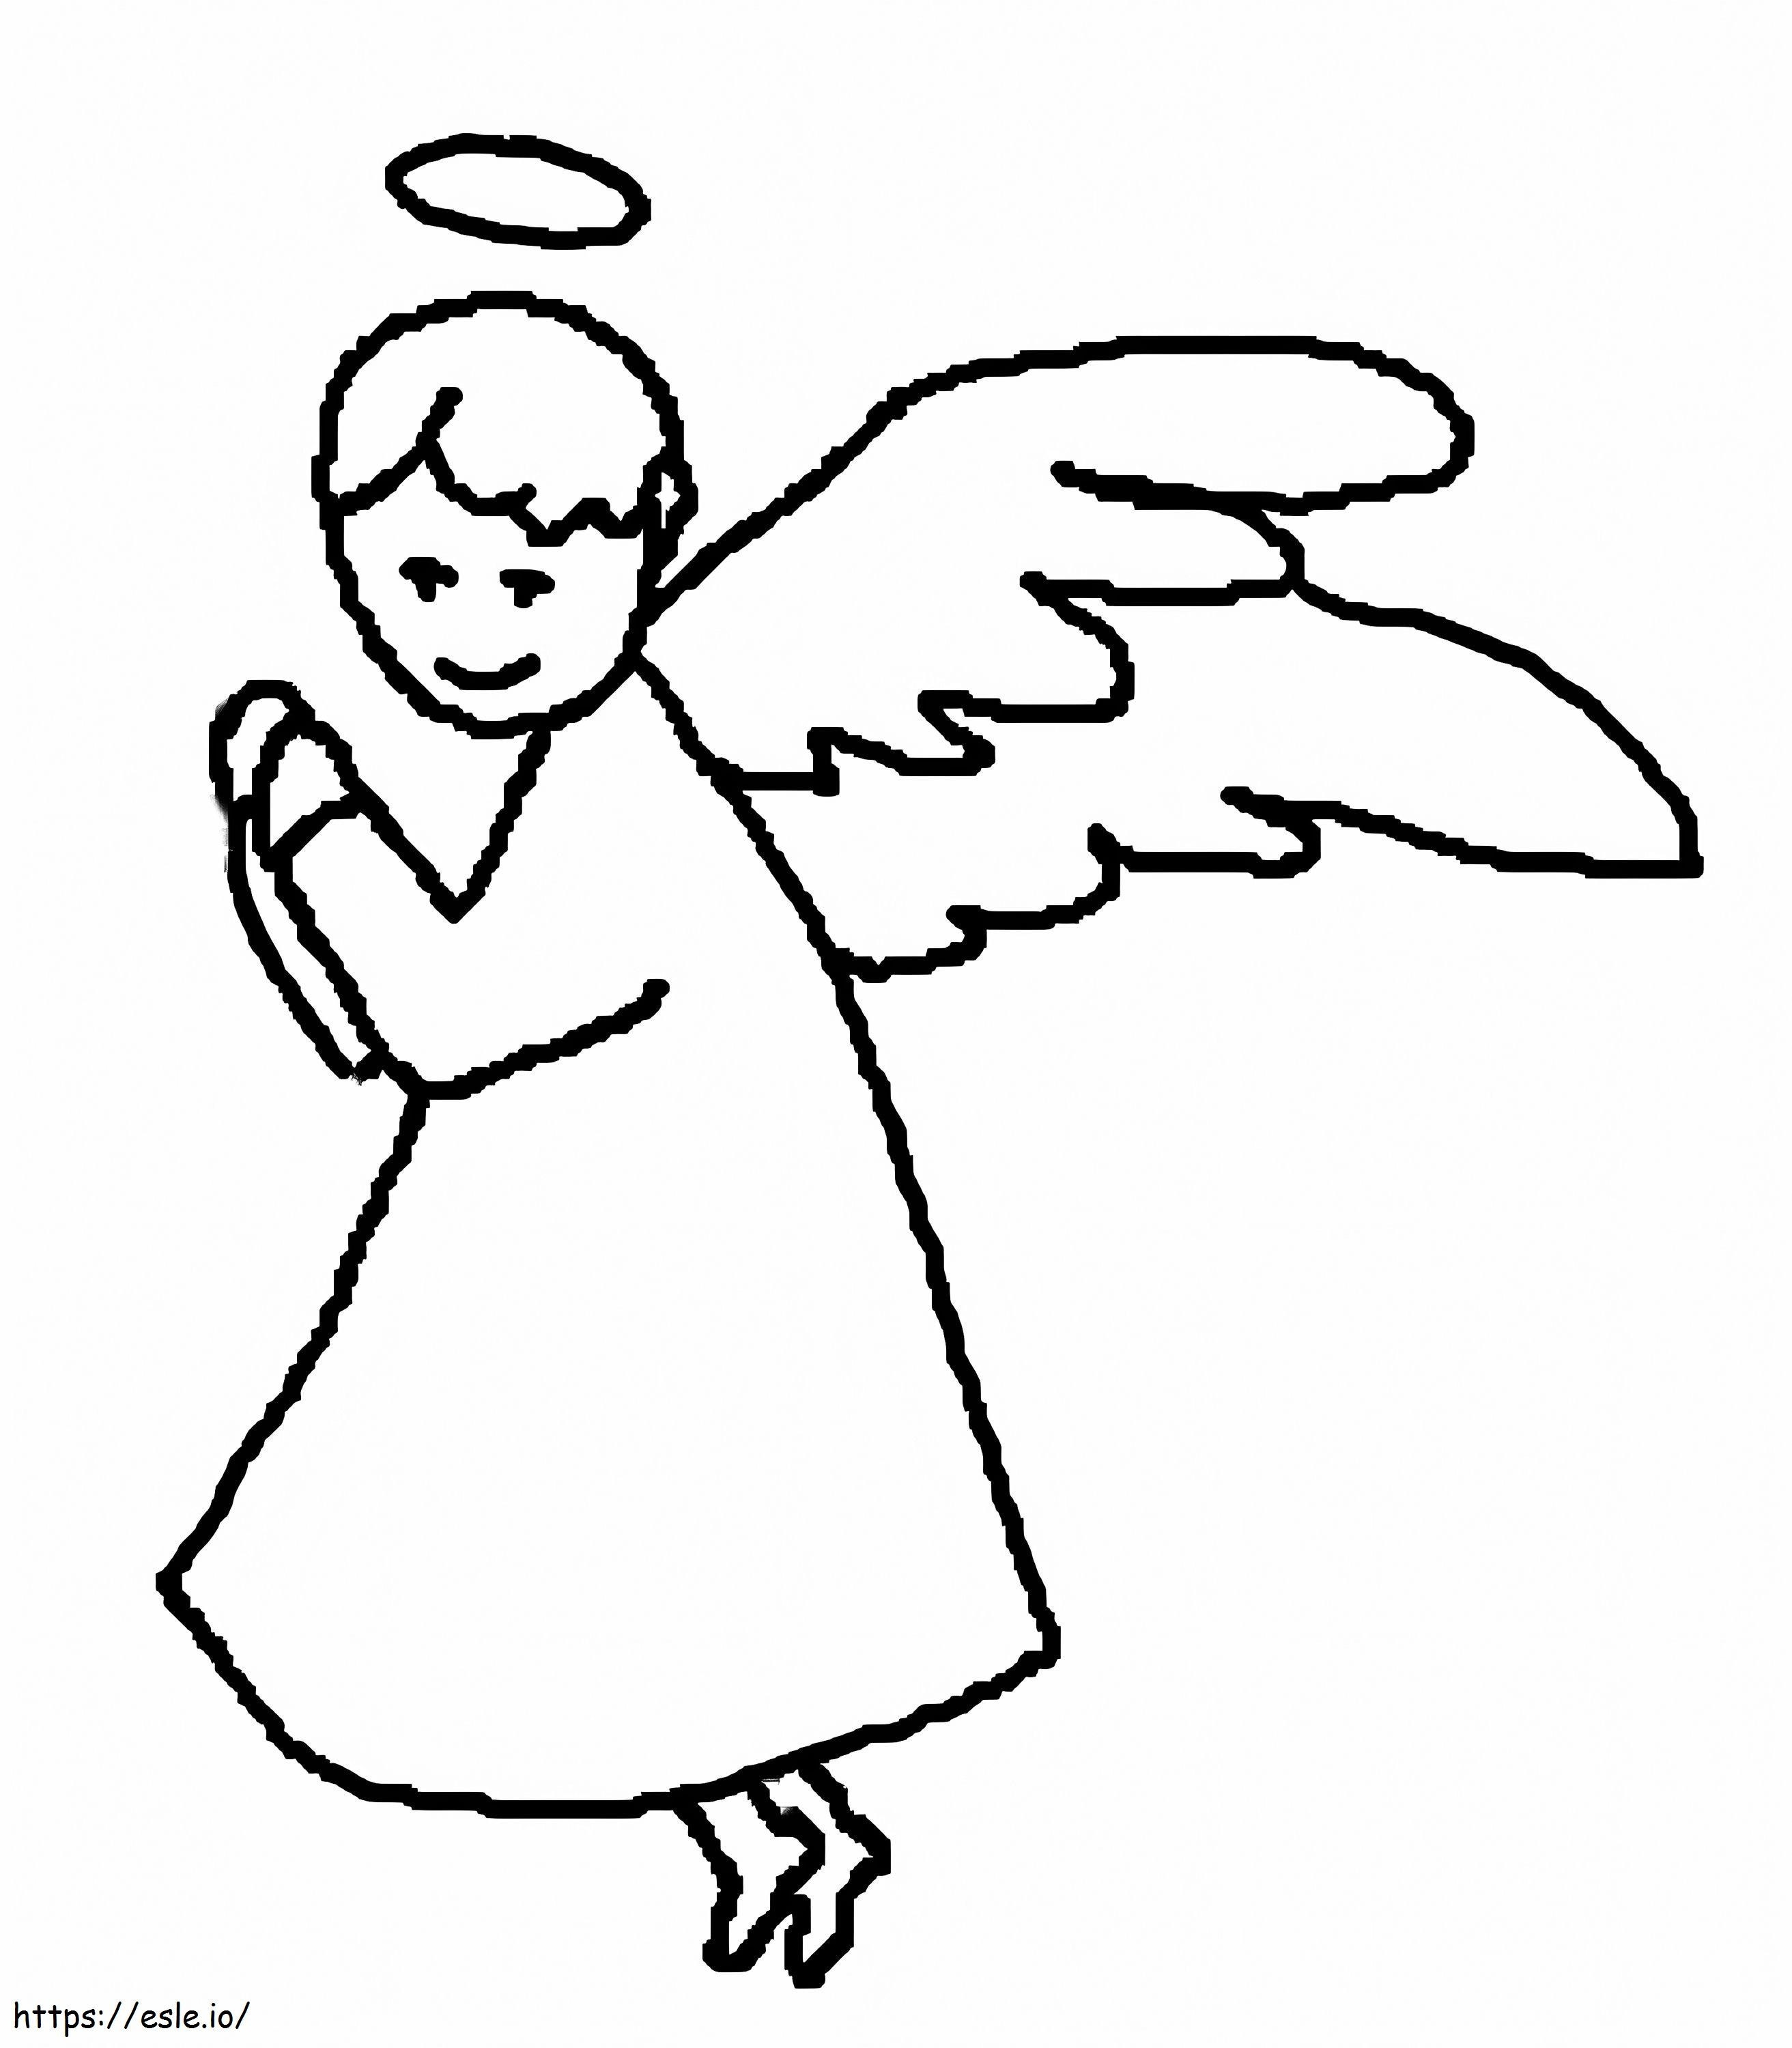 Printable Praying Angel coloring page